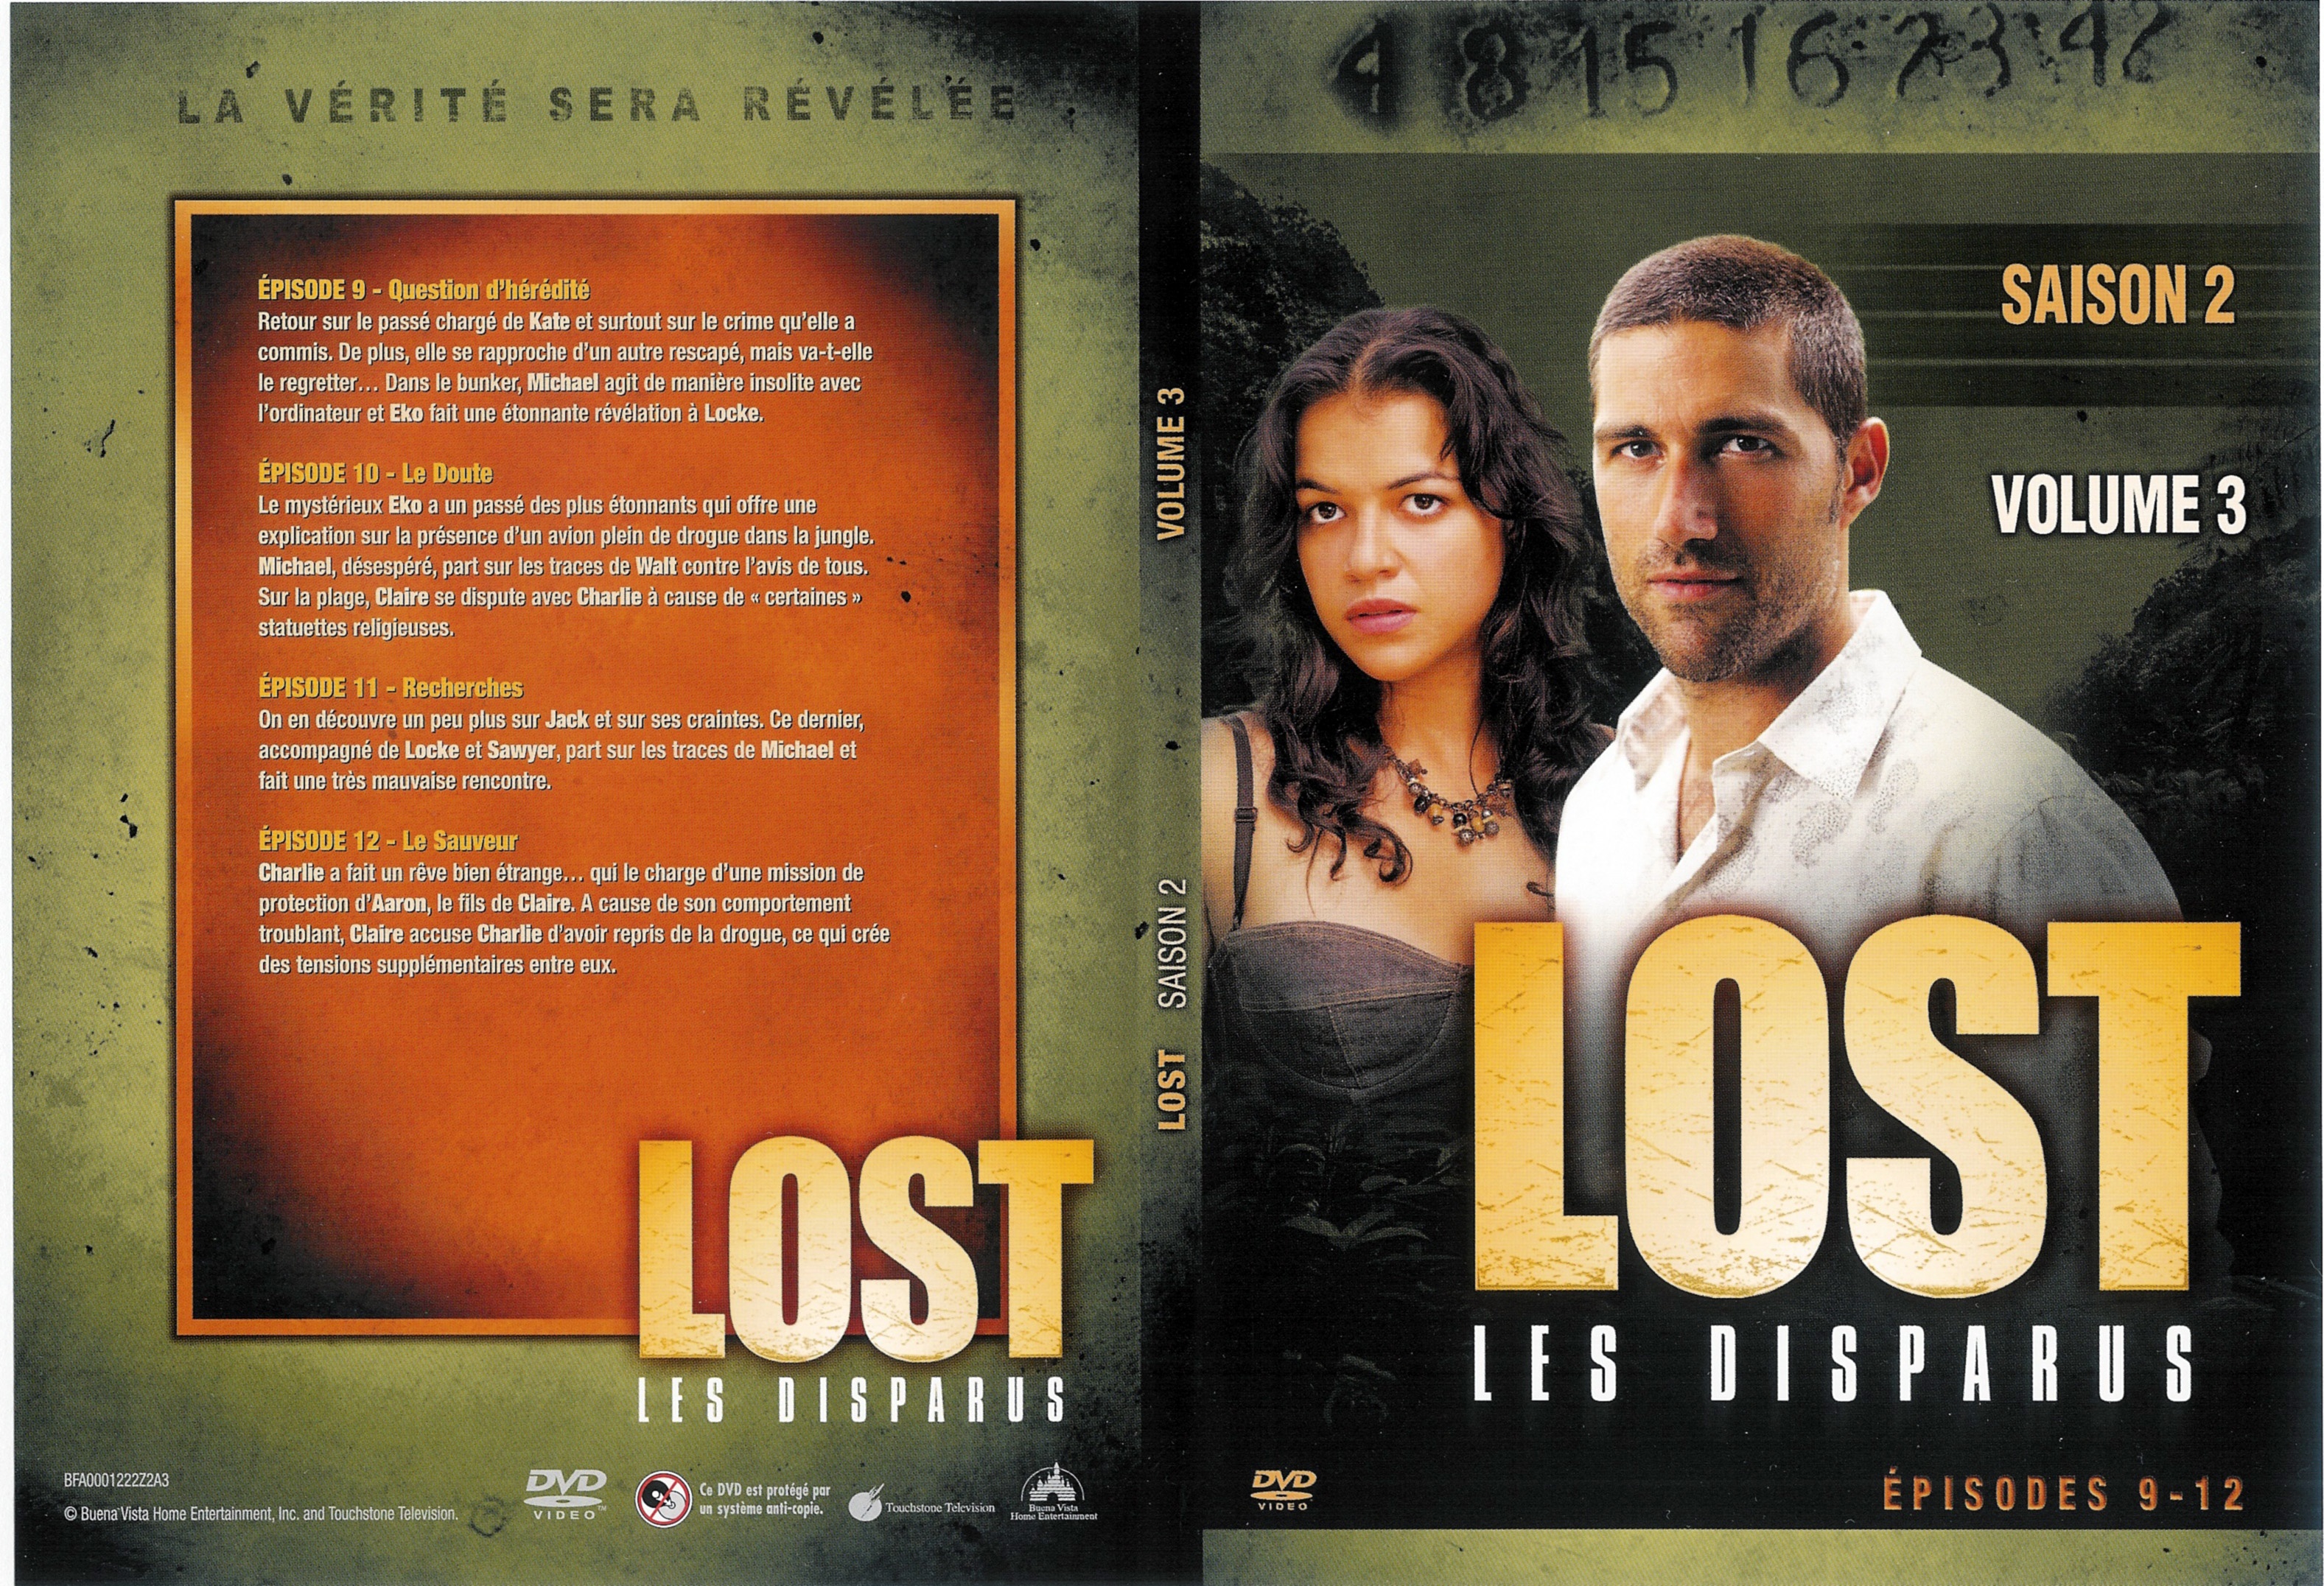 Jaquette DVD Lost Saison 2 DVD 3